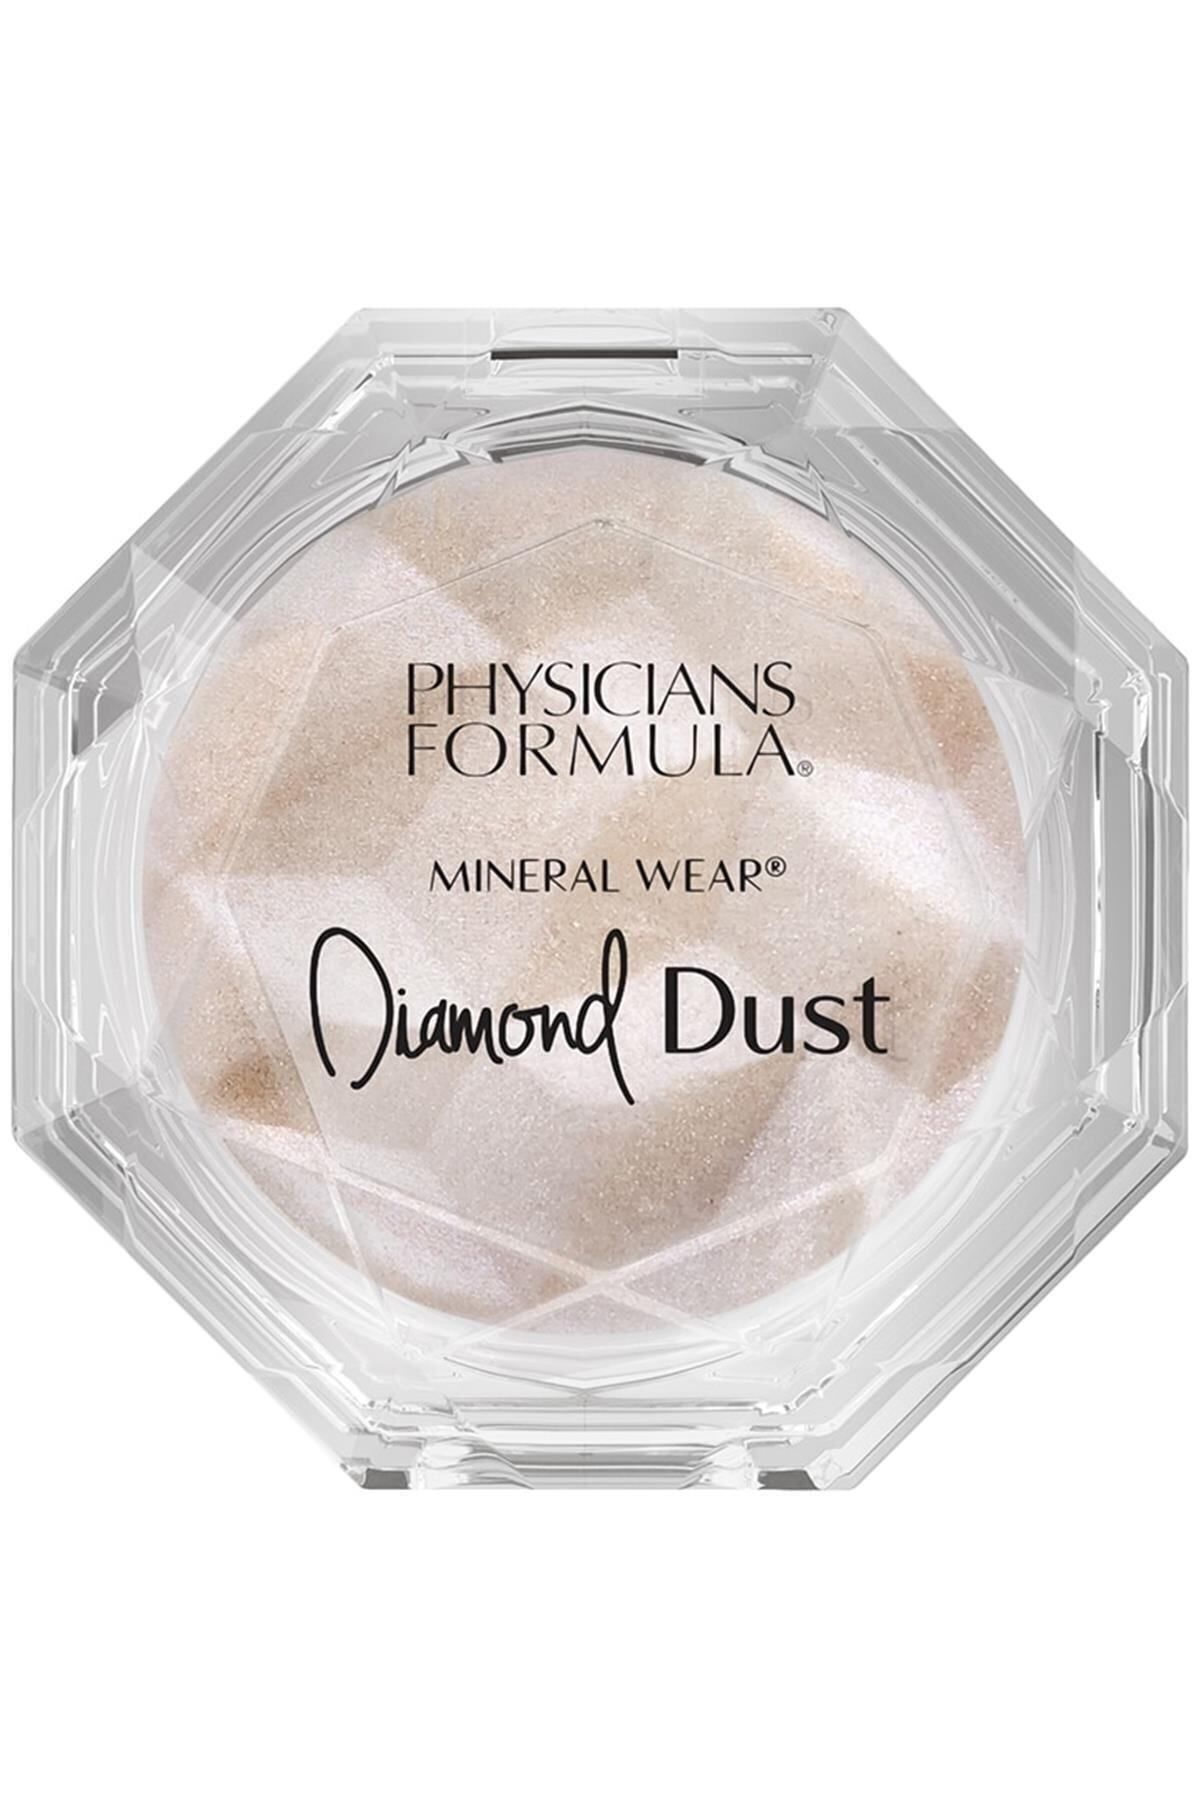 Physicians Formula Marka: Mineral Wear Diamond Glow Dust Pudra Starlit Kategori: Pudra